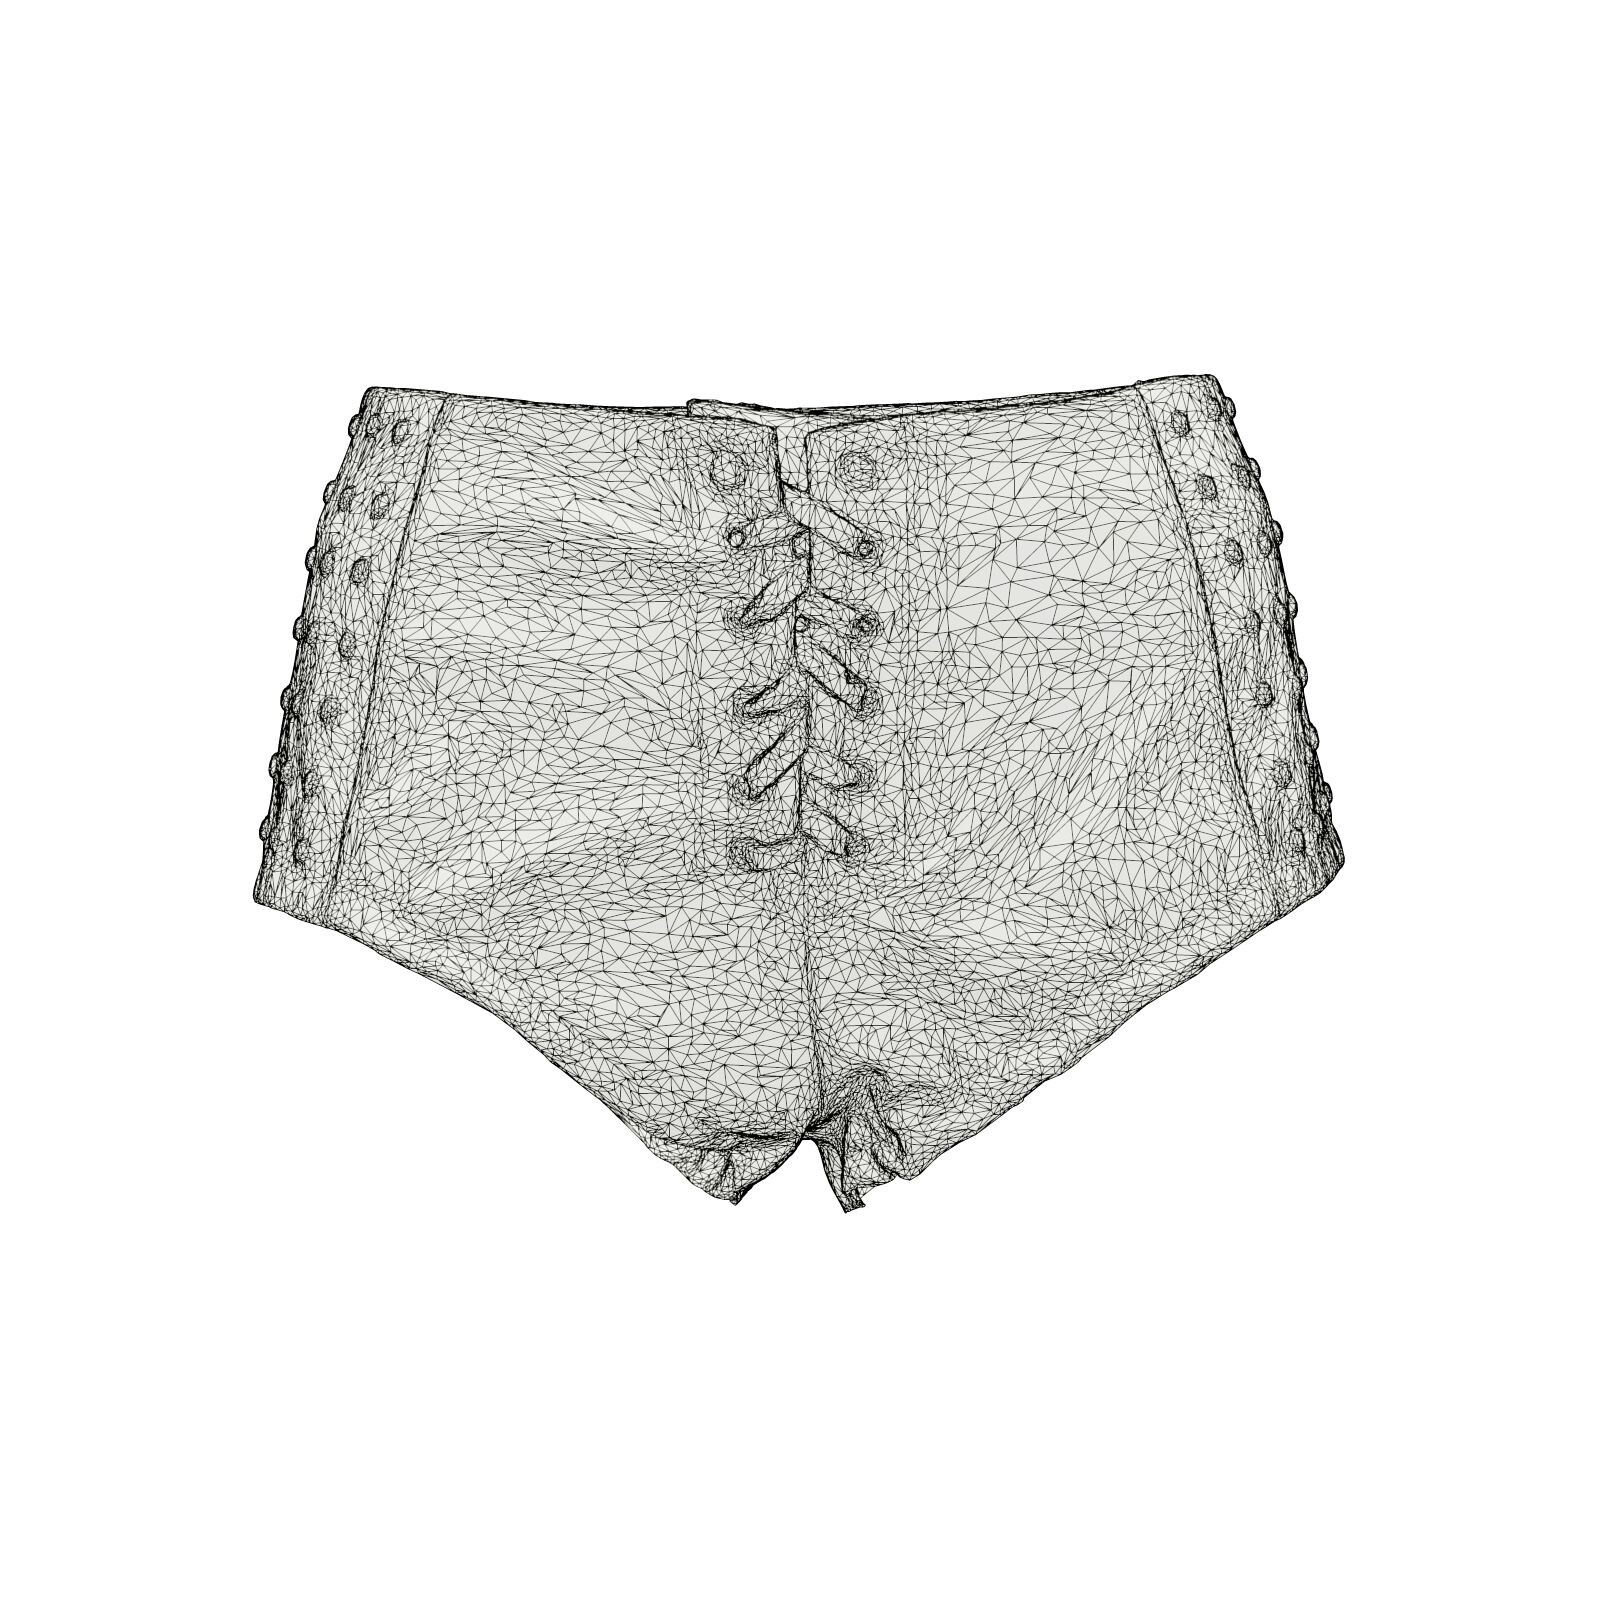 Shorts and Panties –